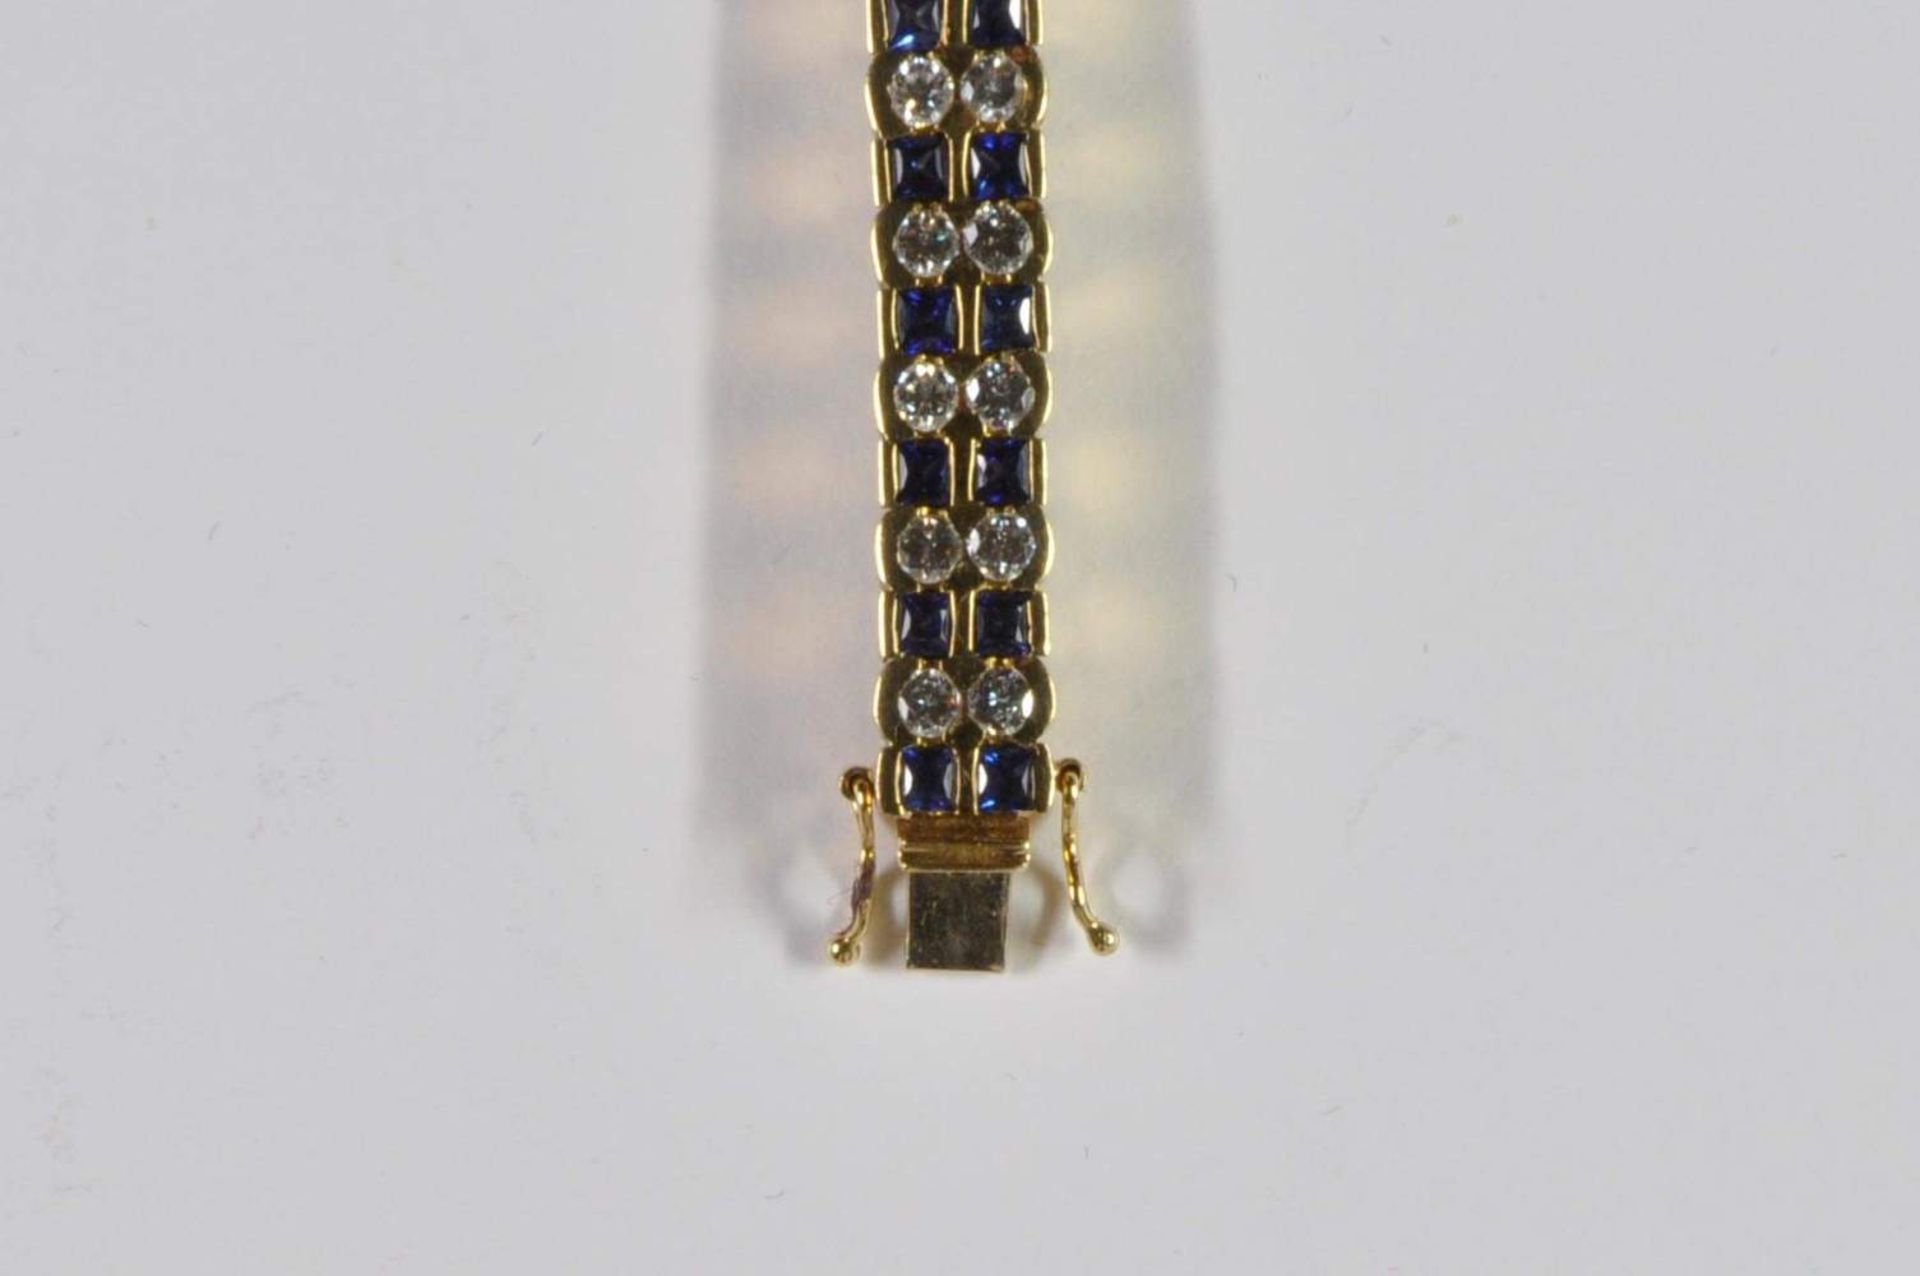 Saphir-Brillant-Armband, 750 Gelbgold, Punze, 66 Brillanten von zus. ca. 3,2ct, 64 Saphiren von zus. - Bild 10 aus 20